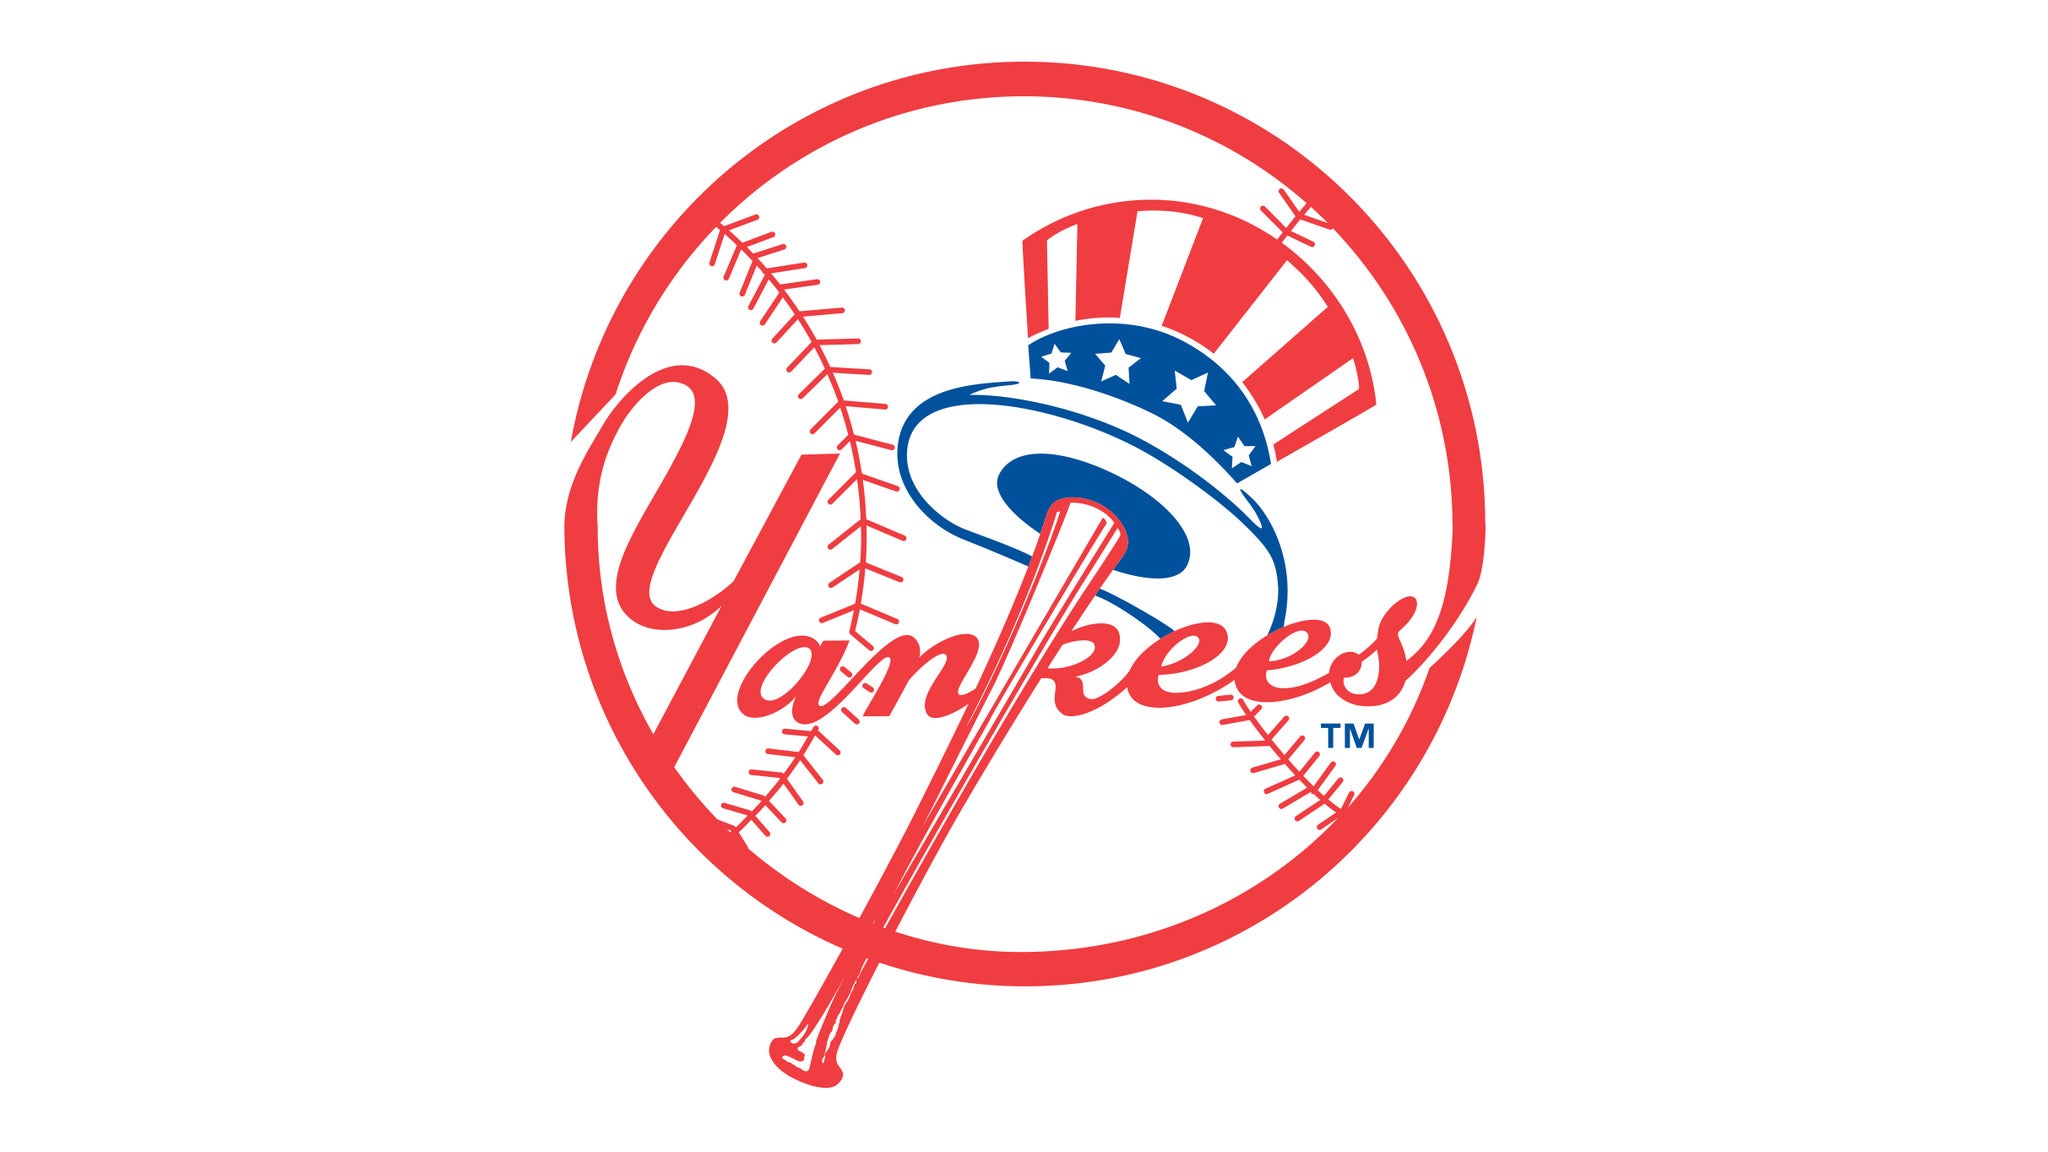 New York Yankees v. Baltimore Orioles